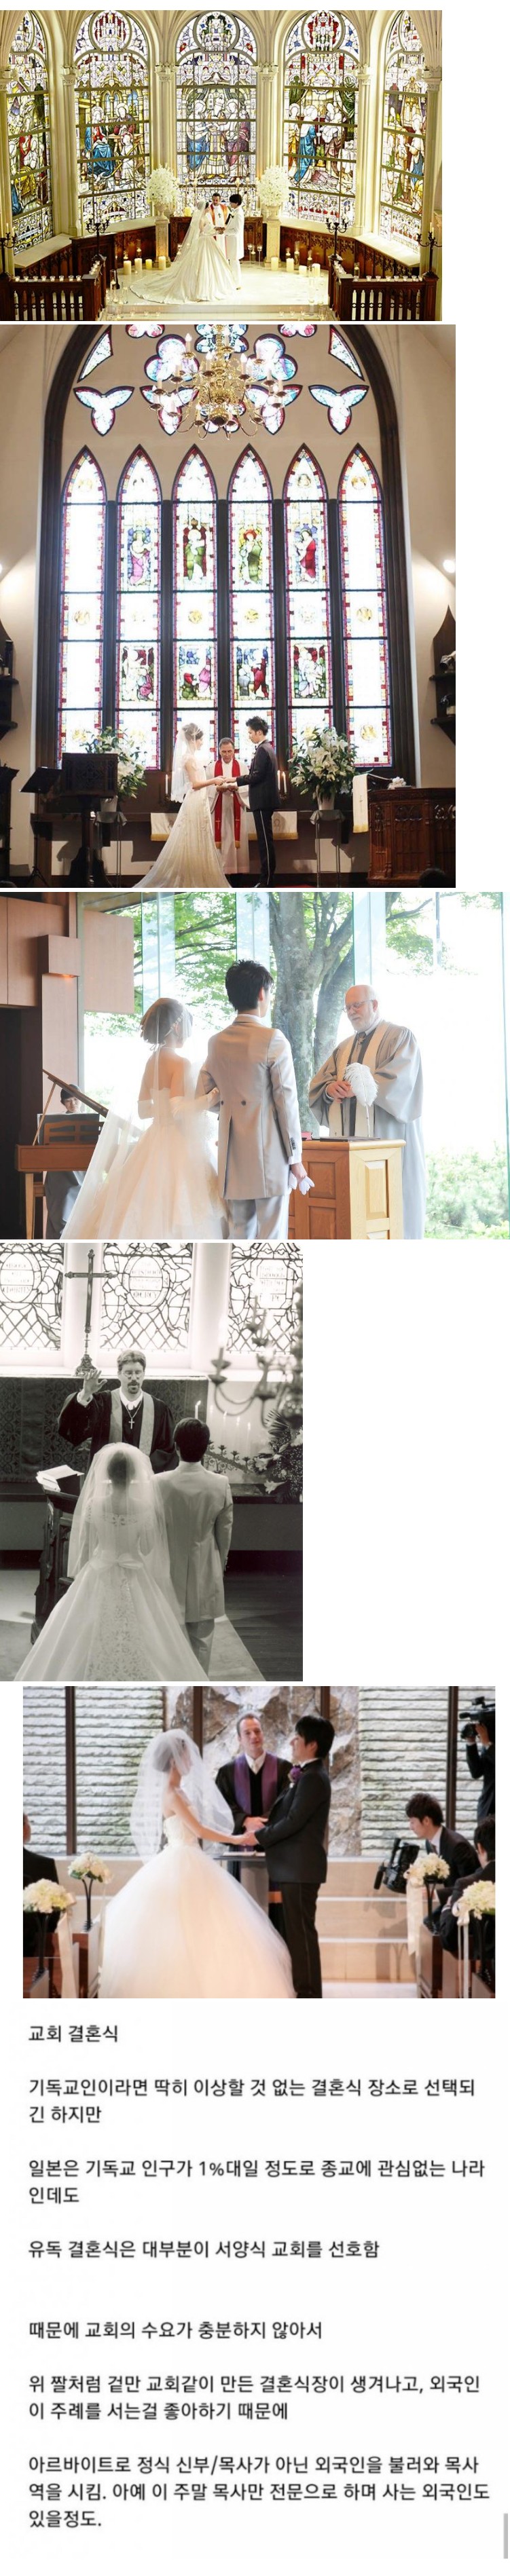 썸네일-일본의 이상한 결혼식 문화-이미지